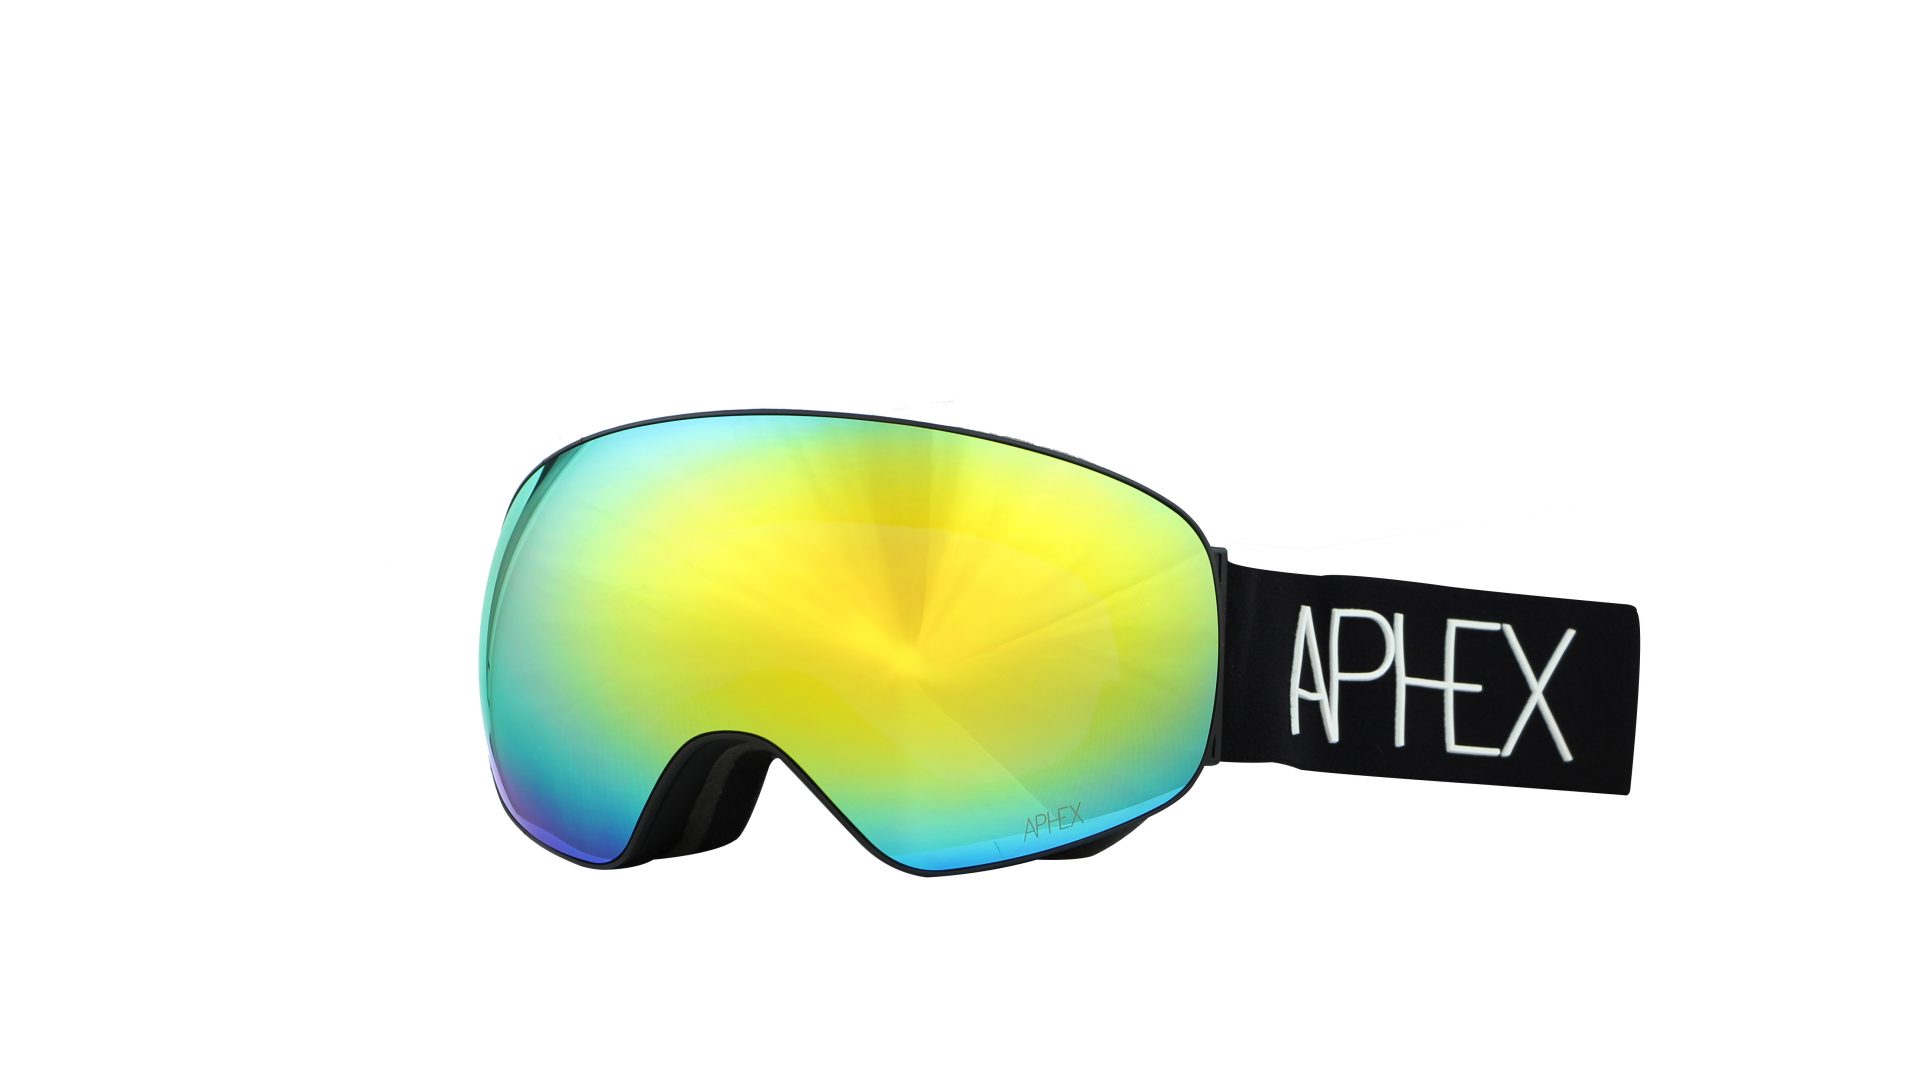 Aphex FW20/21 Goggles